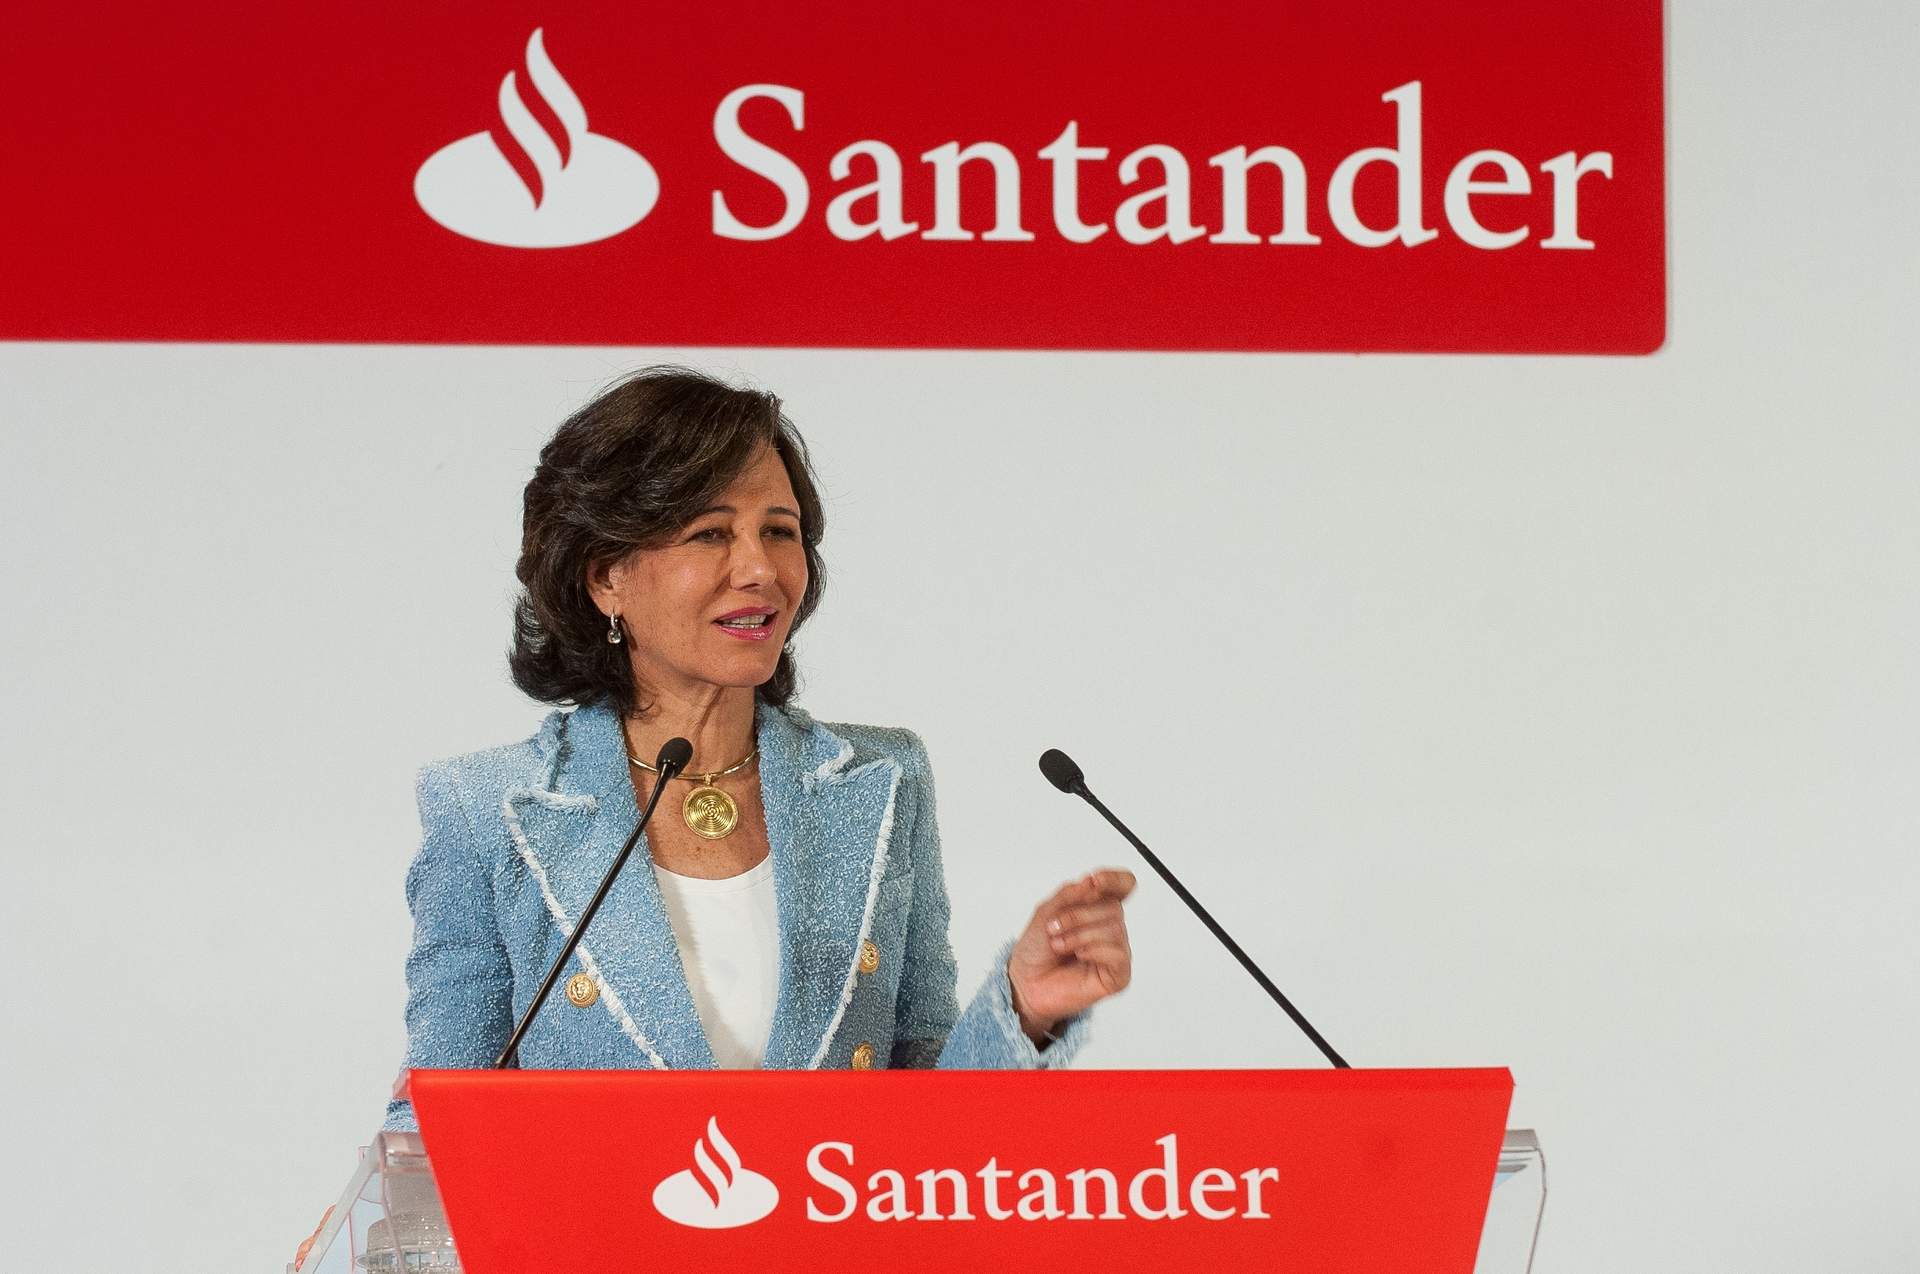 Cargar máis
Archivo - La presidenta de Banco Santander, Ana Botín, en la Conferencia Internacional de Banca 2019